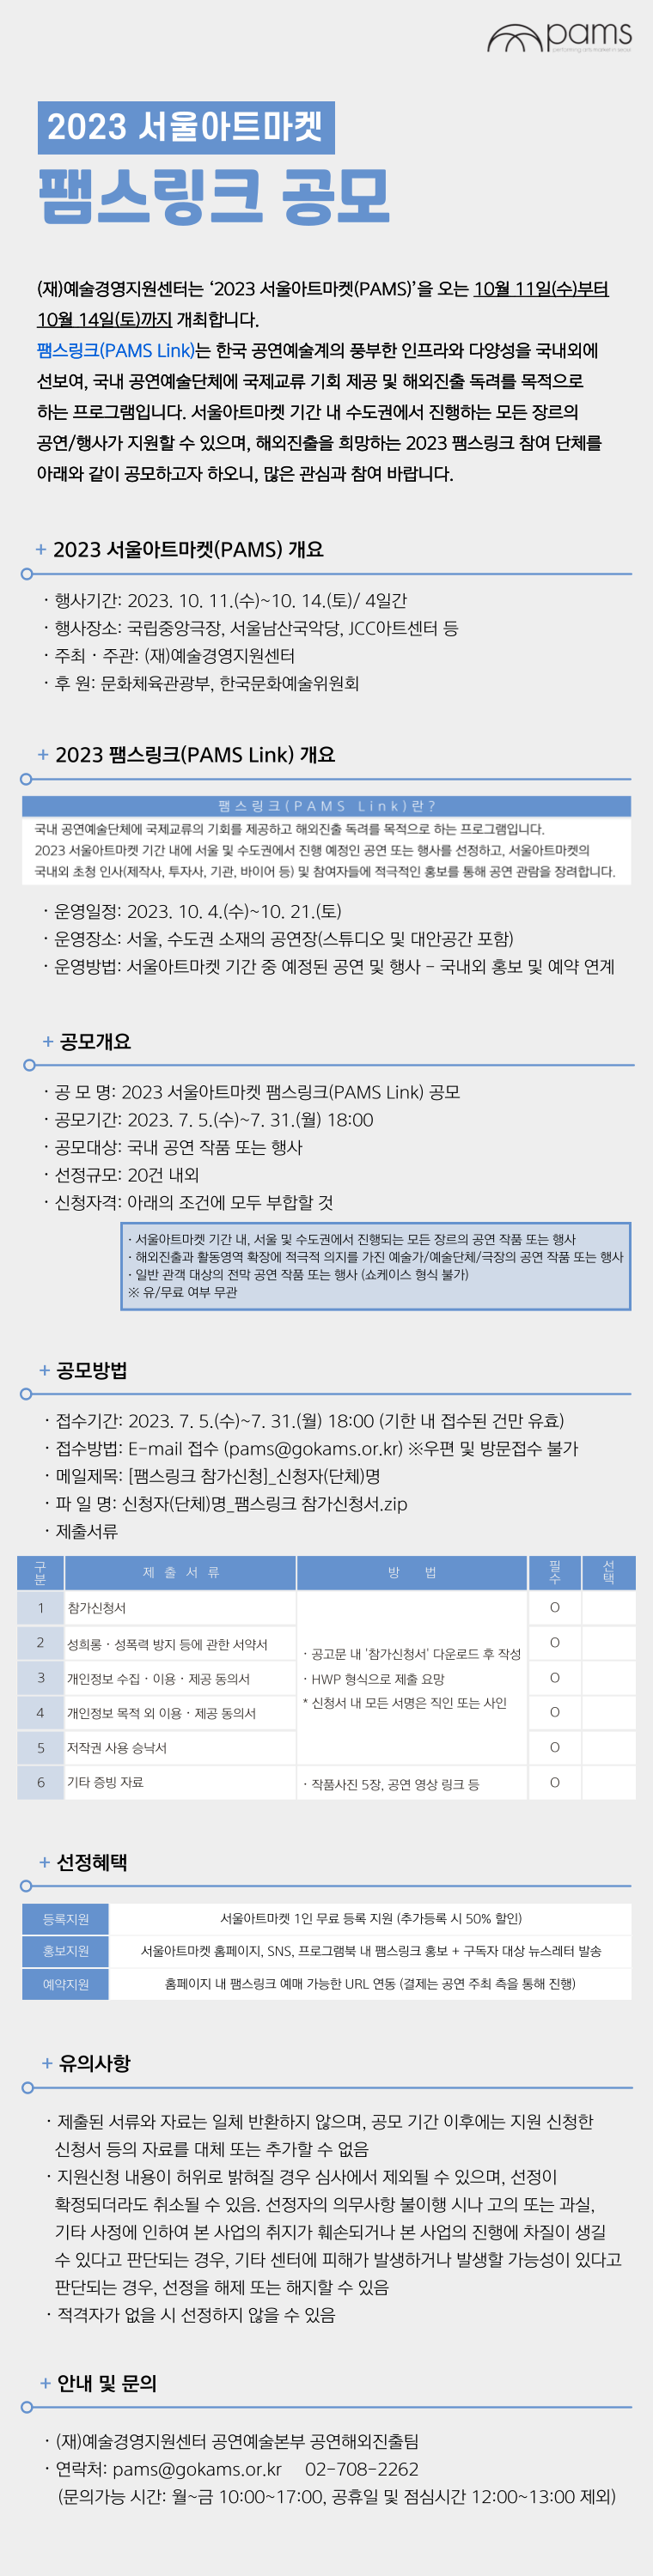 2023 서울아트마켓 팸스링크(PAMS Link) 공모